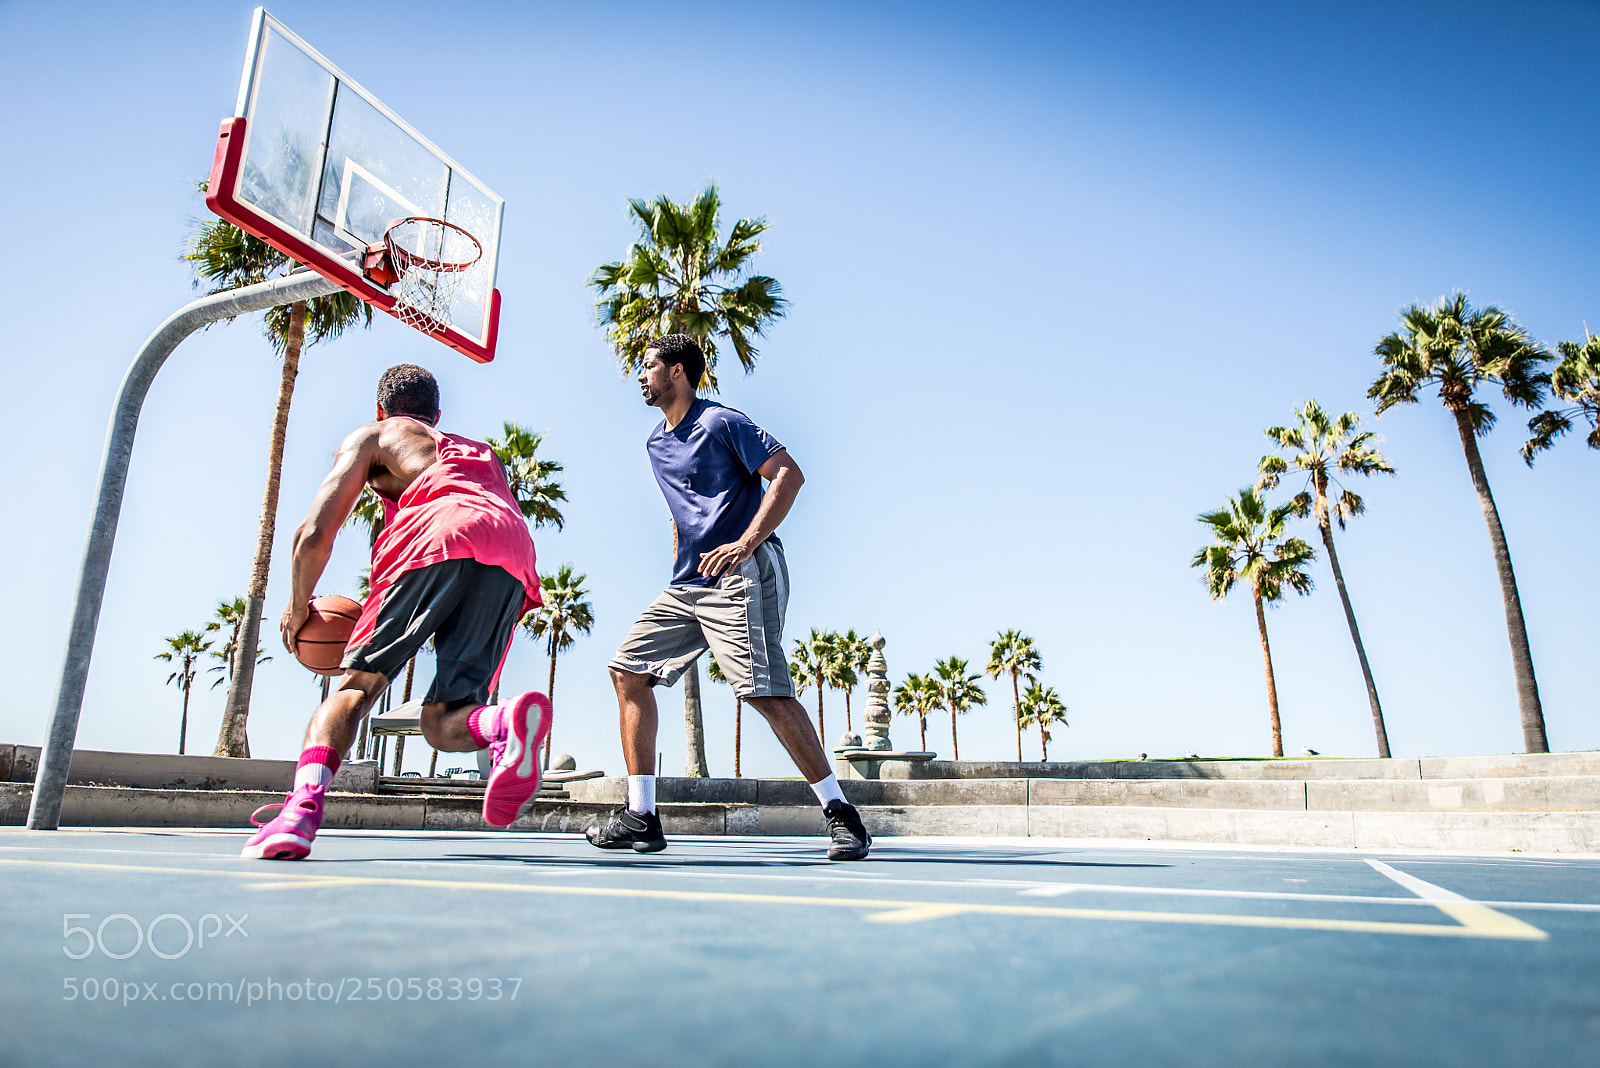 Nikon D610 sample photo. Two basketball players playing photography